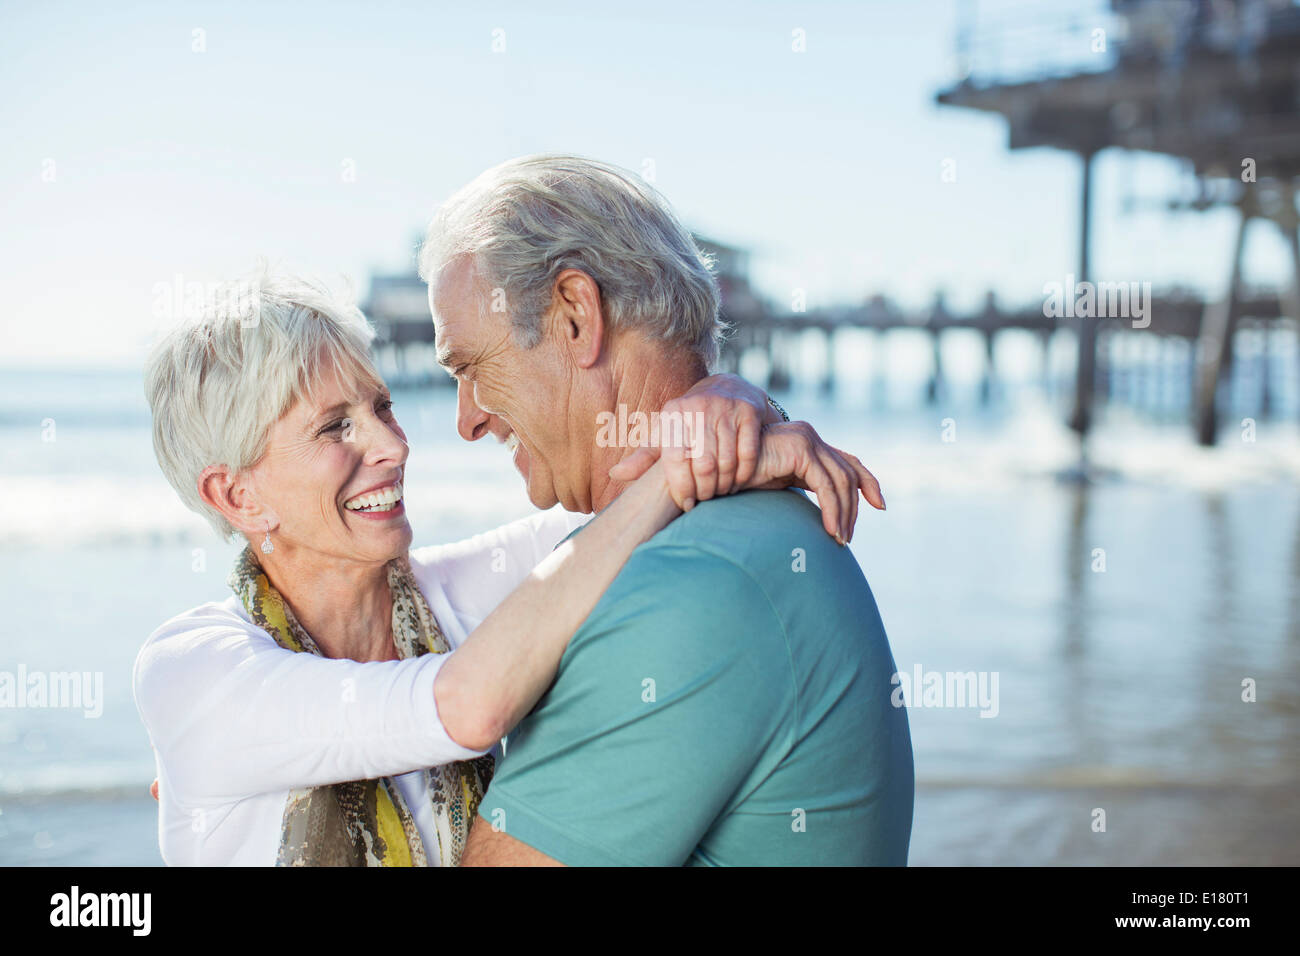 Las parejas ancianas abrazos en la playa Foto de stock